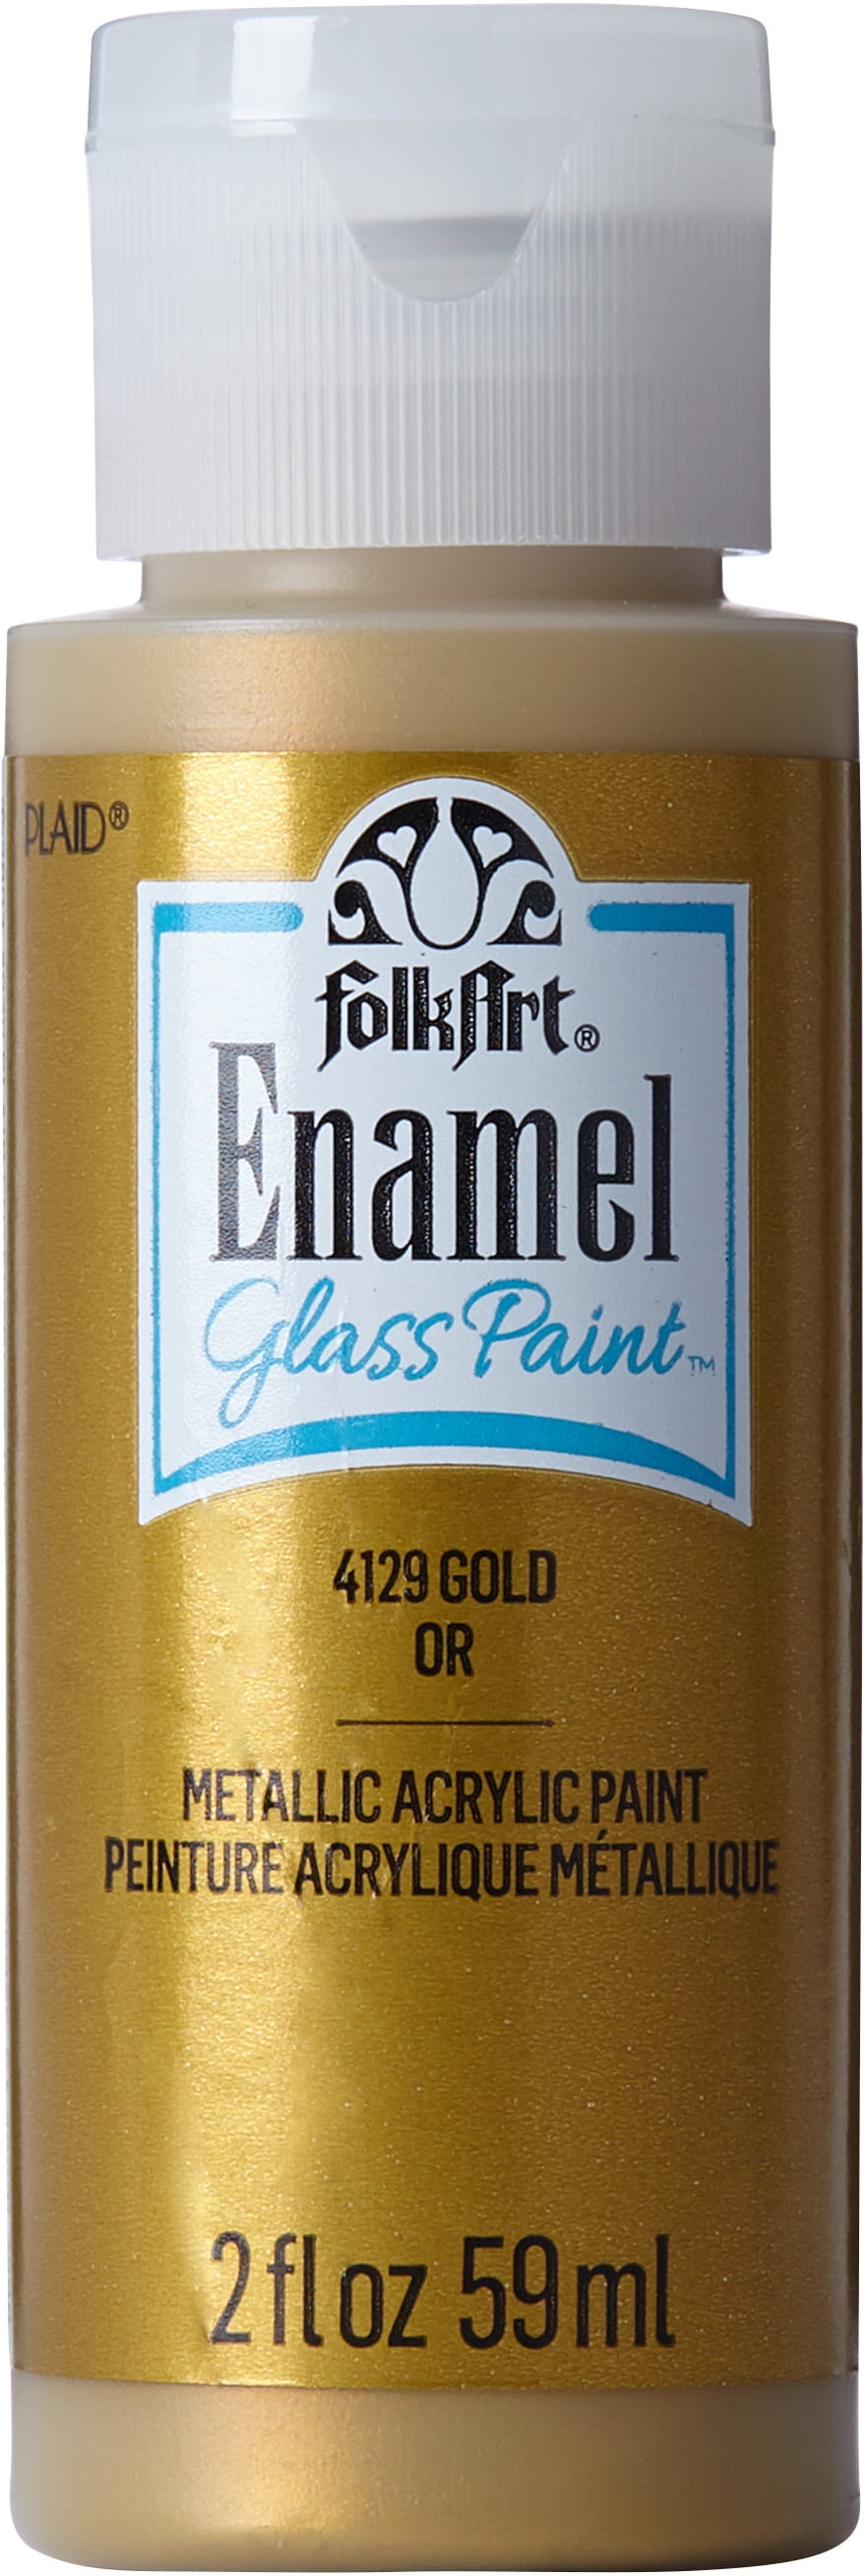  FolkArt Gloss Finish Acrylic Enamel Craft Set Designed